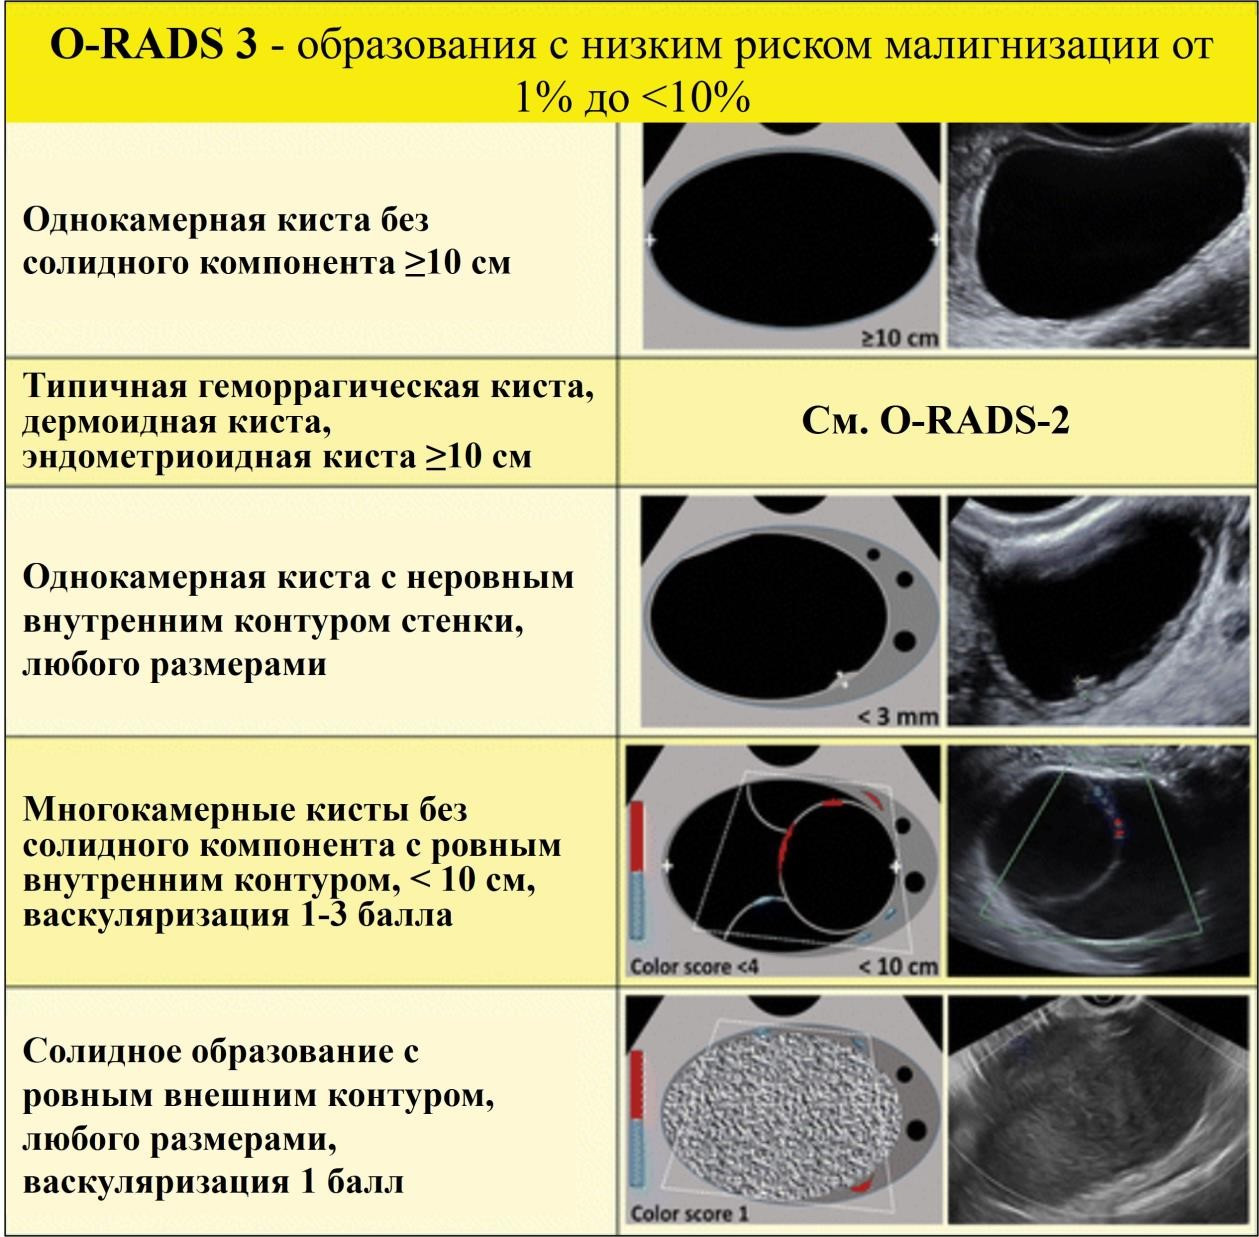 Рис. 6. Изображения, классифицируемые как O-RADS 3, патологические образования с низким риском малигнизации.